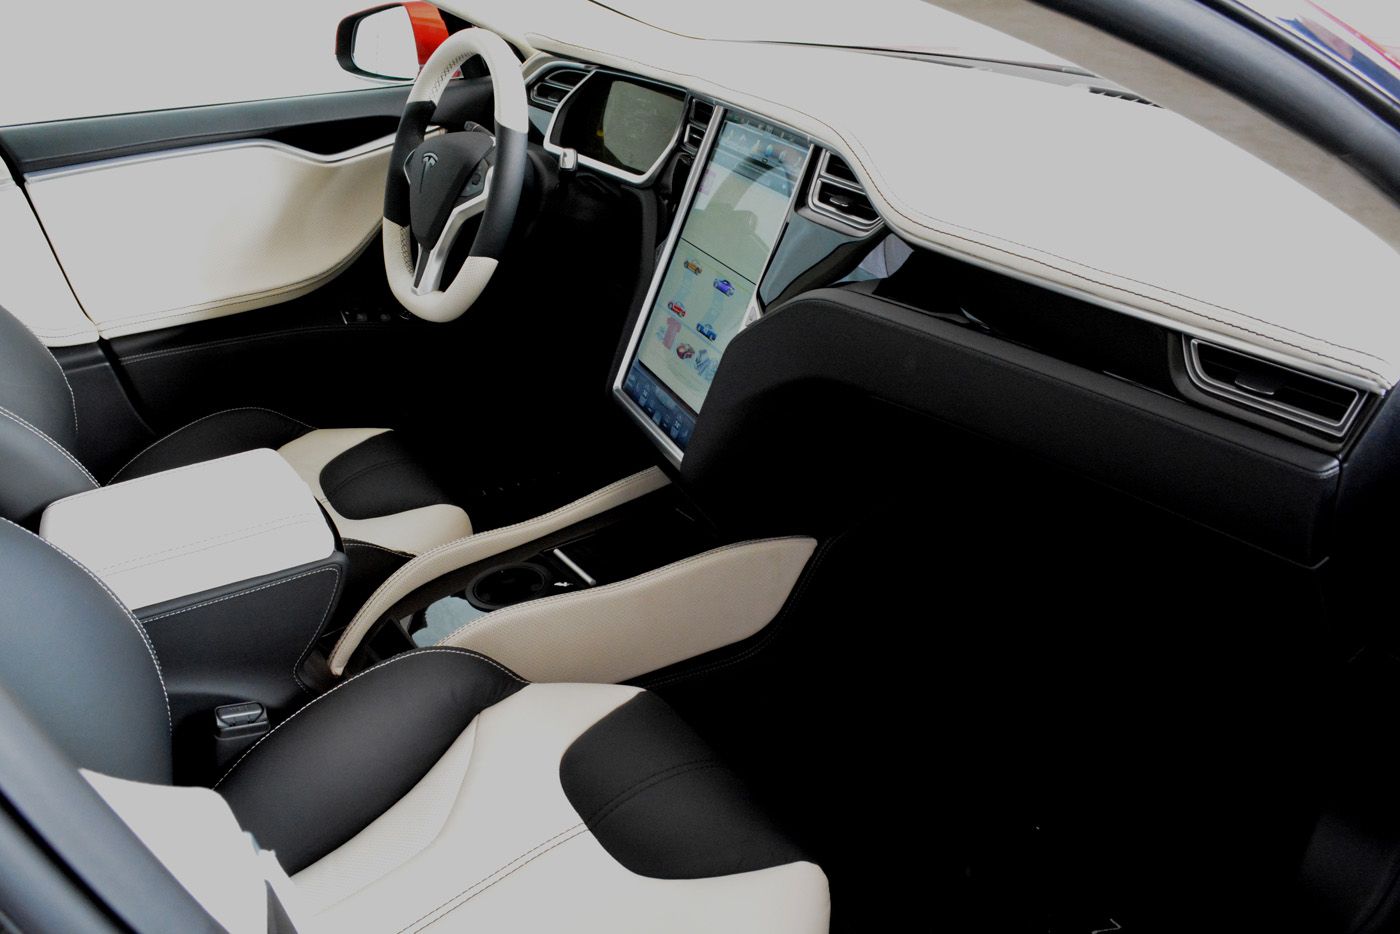 2014 Saleen Tesla Model S Foursixteen